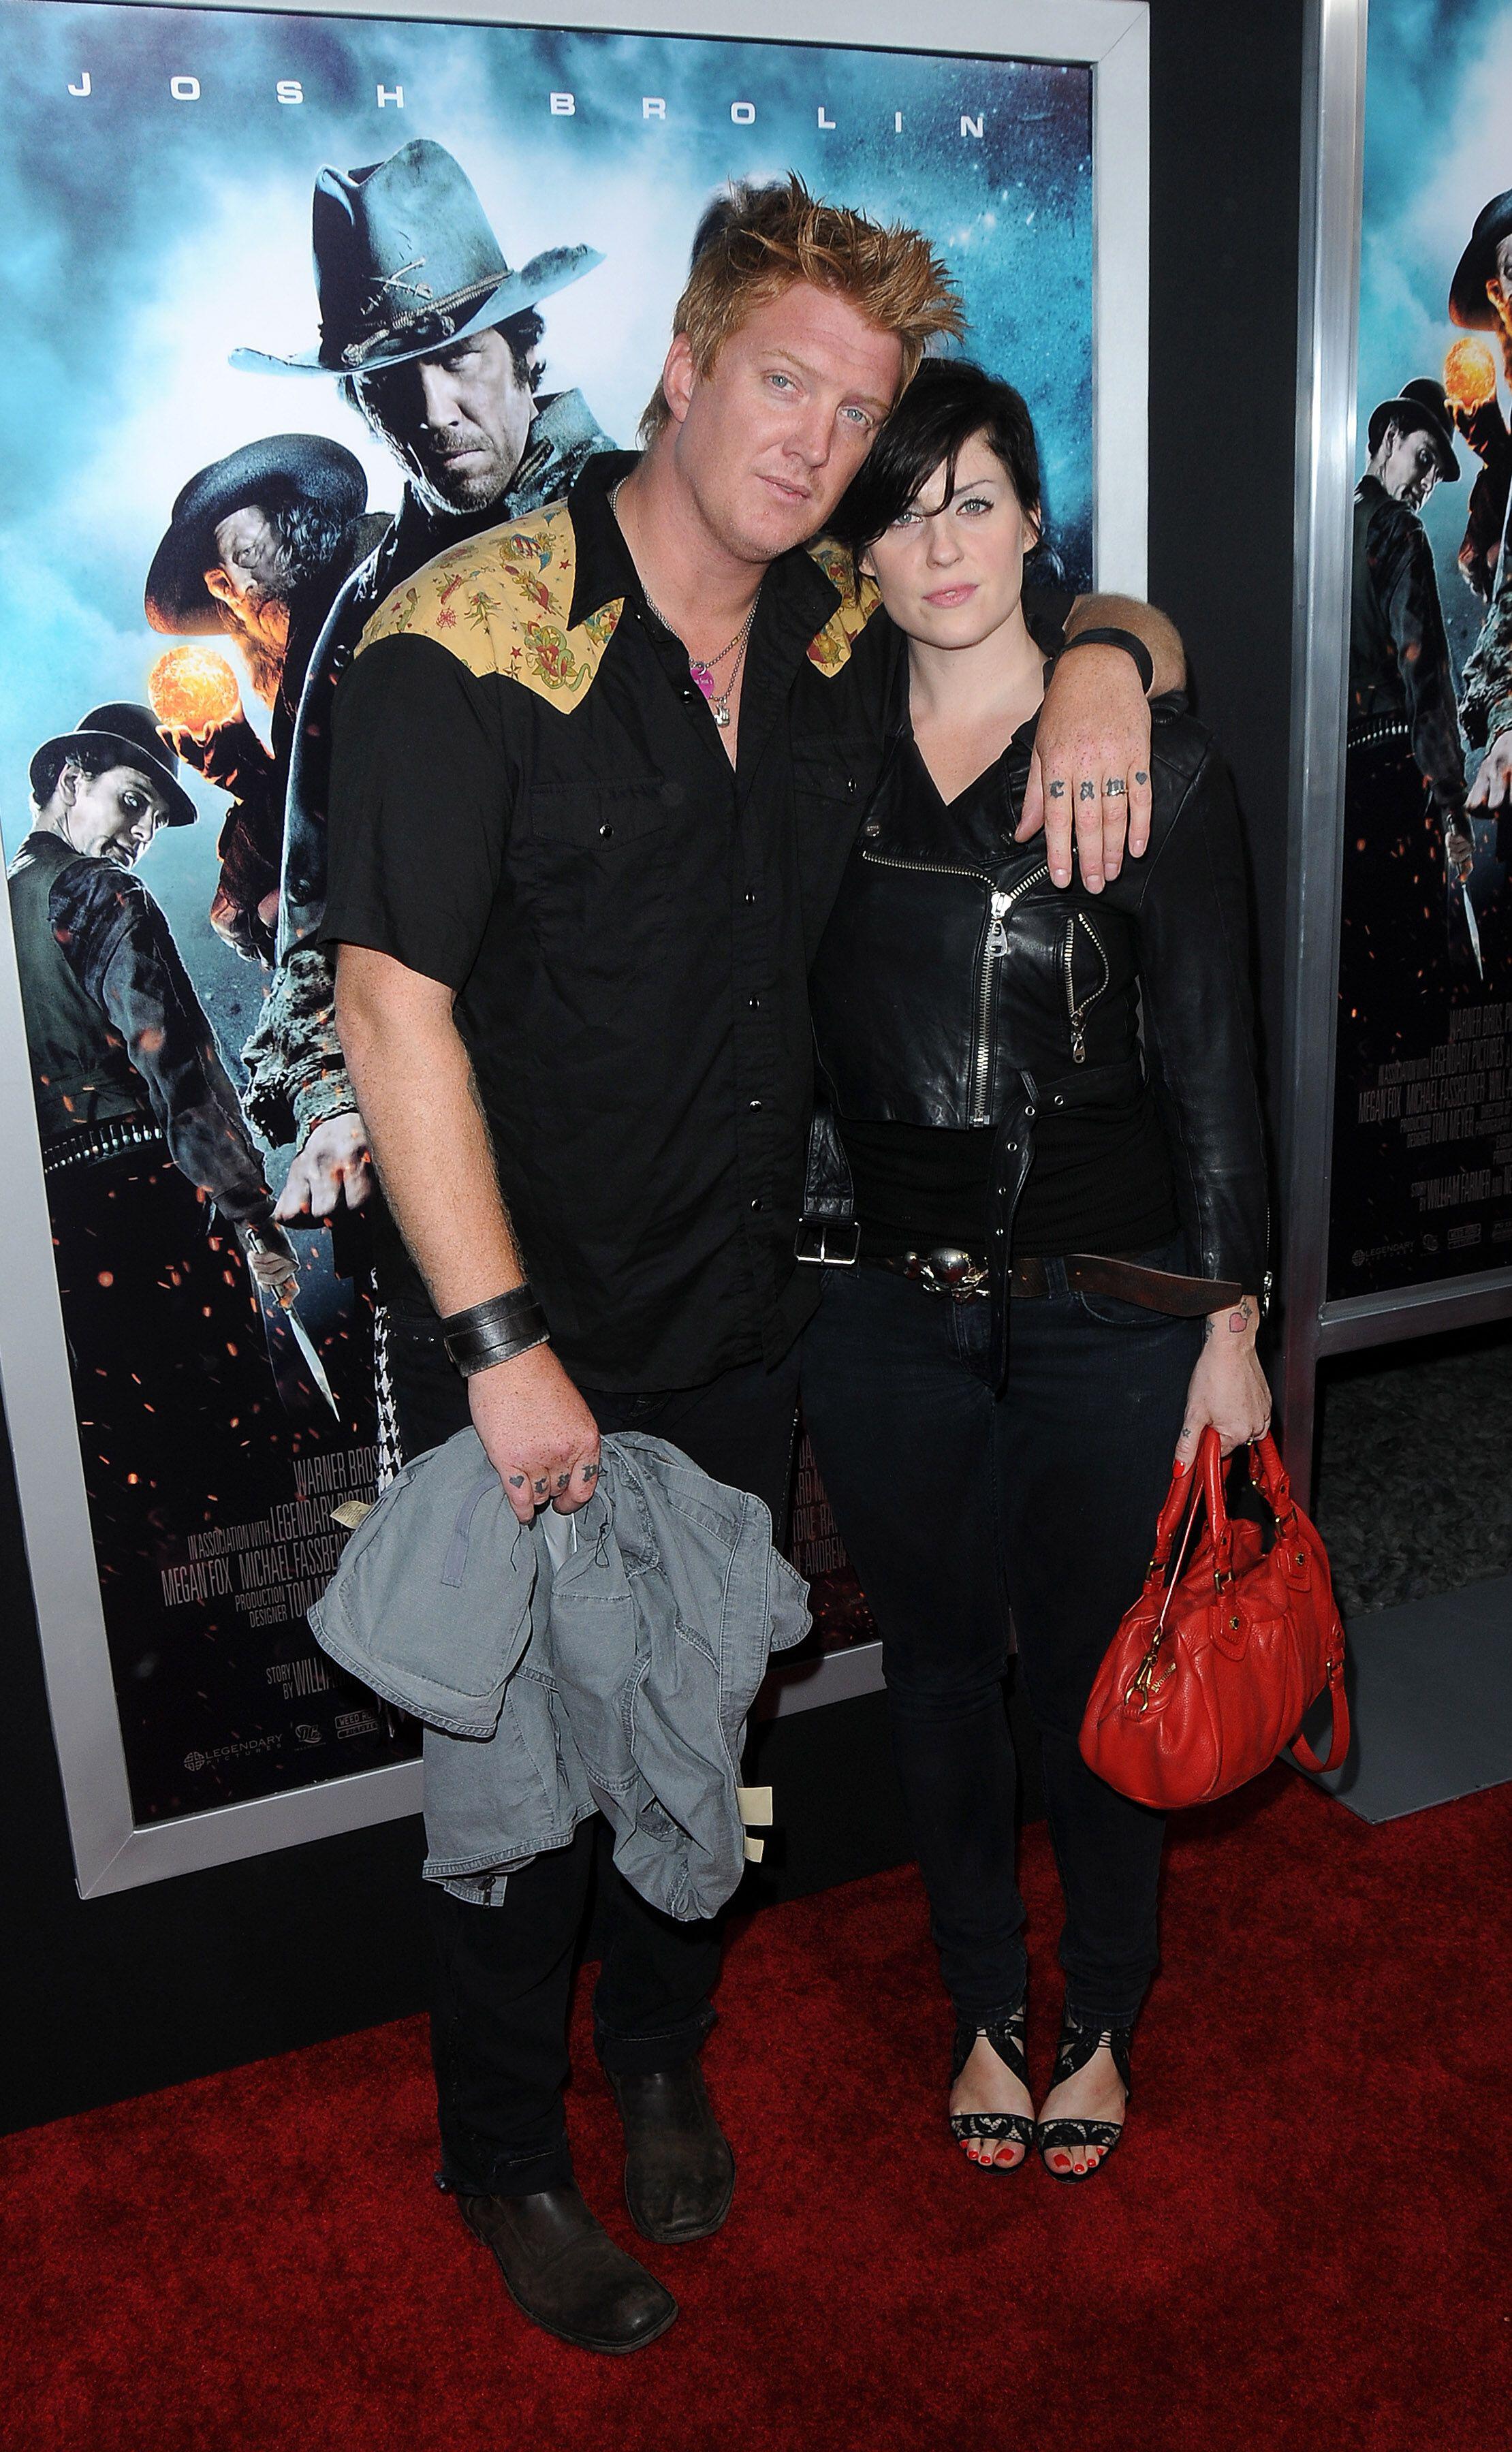 Josh Homme von „Queens of the Stone Age“ mit Ex-Frau Brody